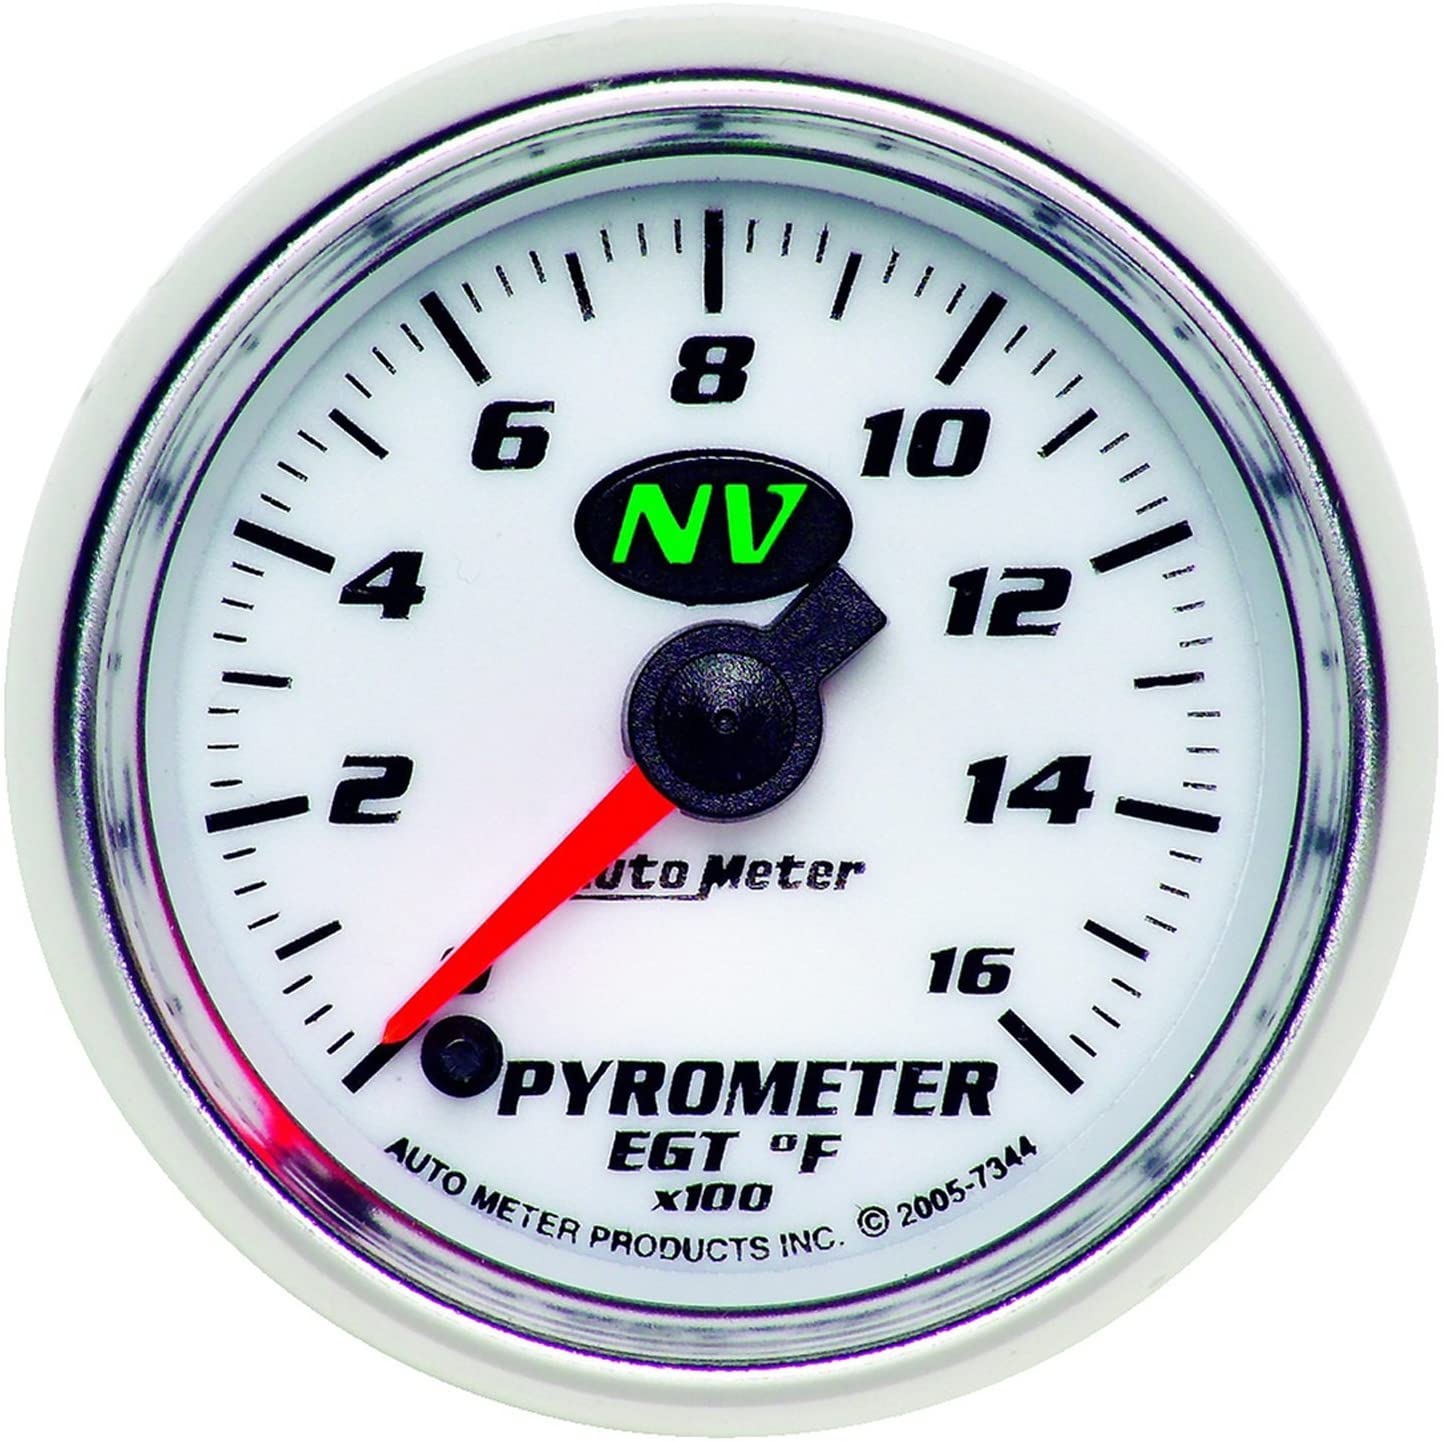 Auto Meter 7344 NV Electric Pyrometer Gauge Kit